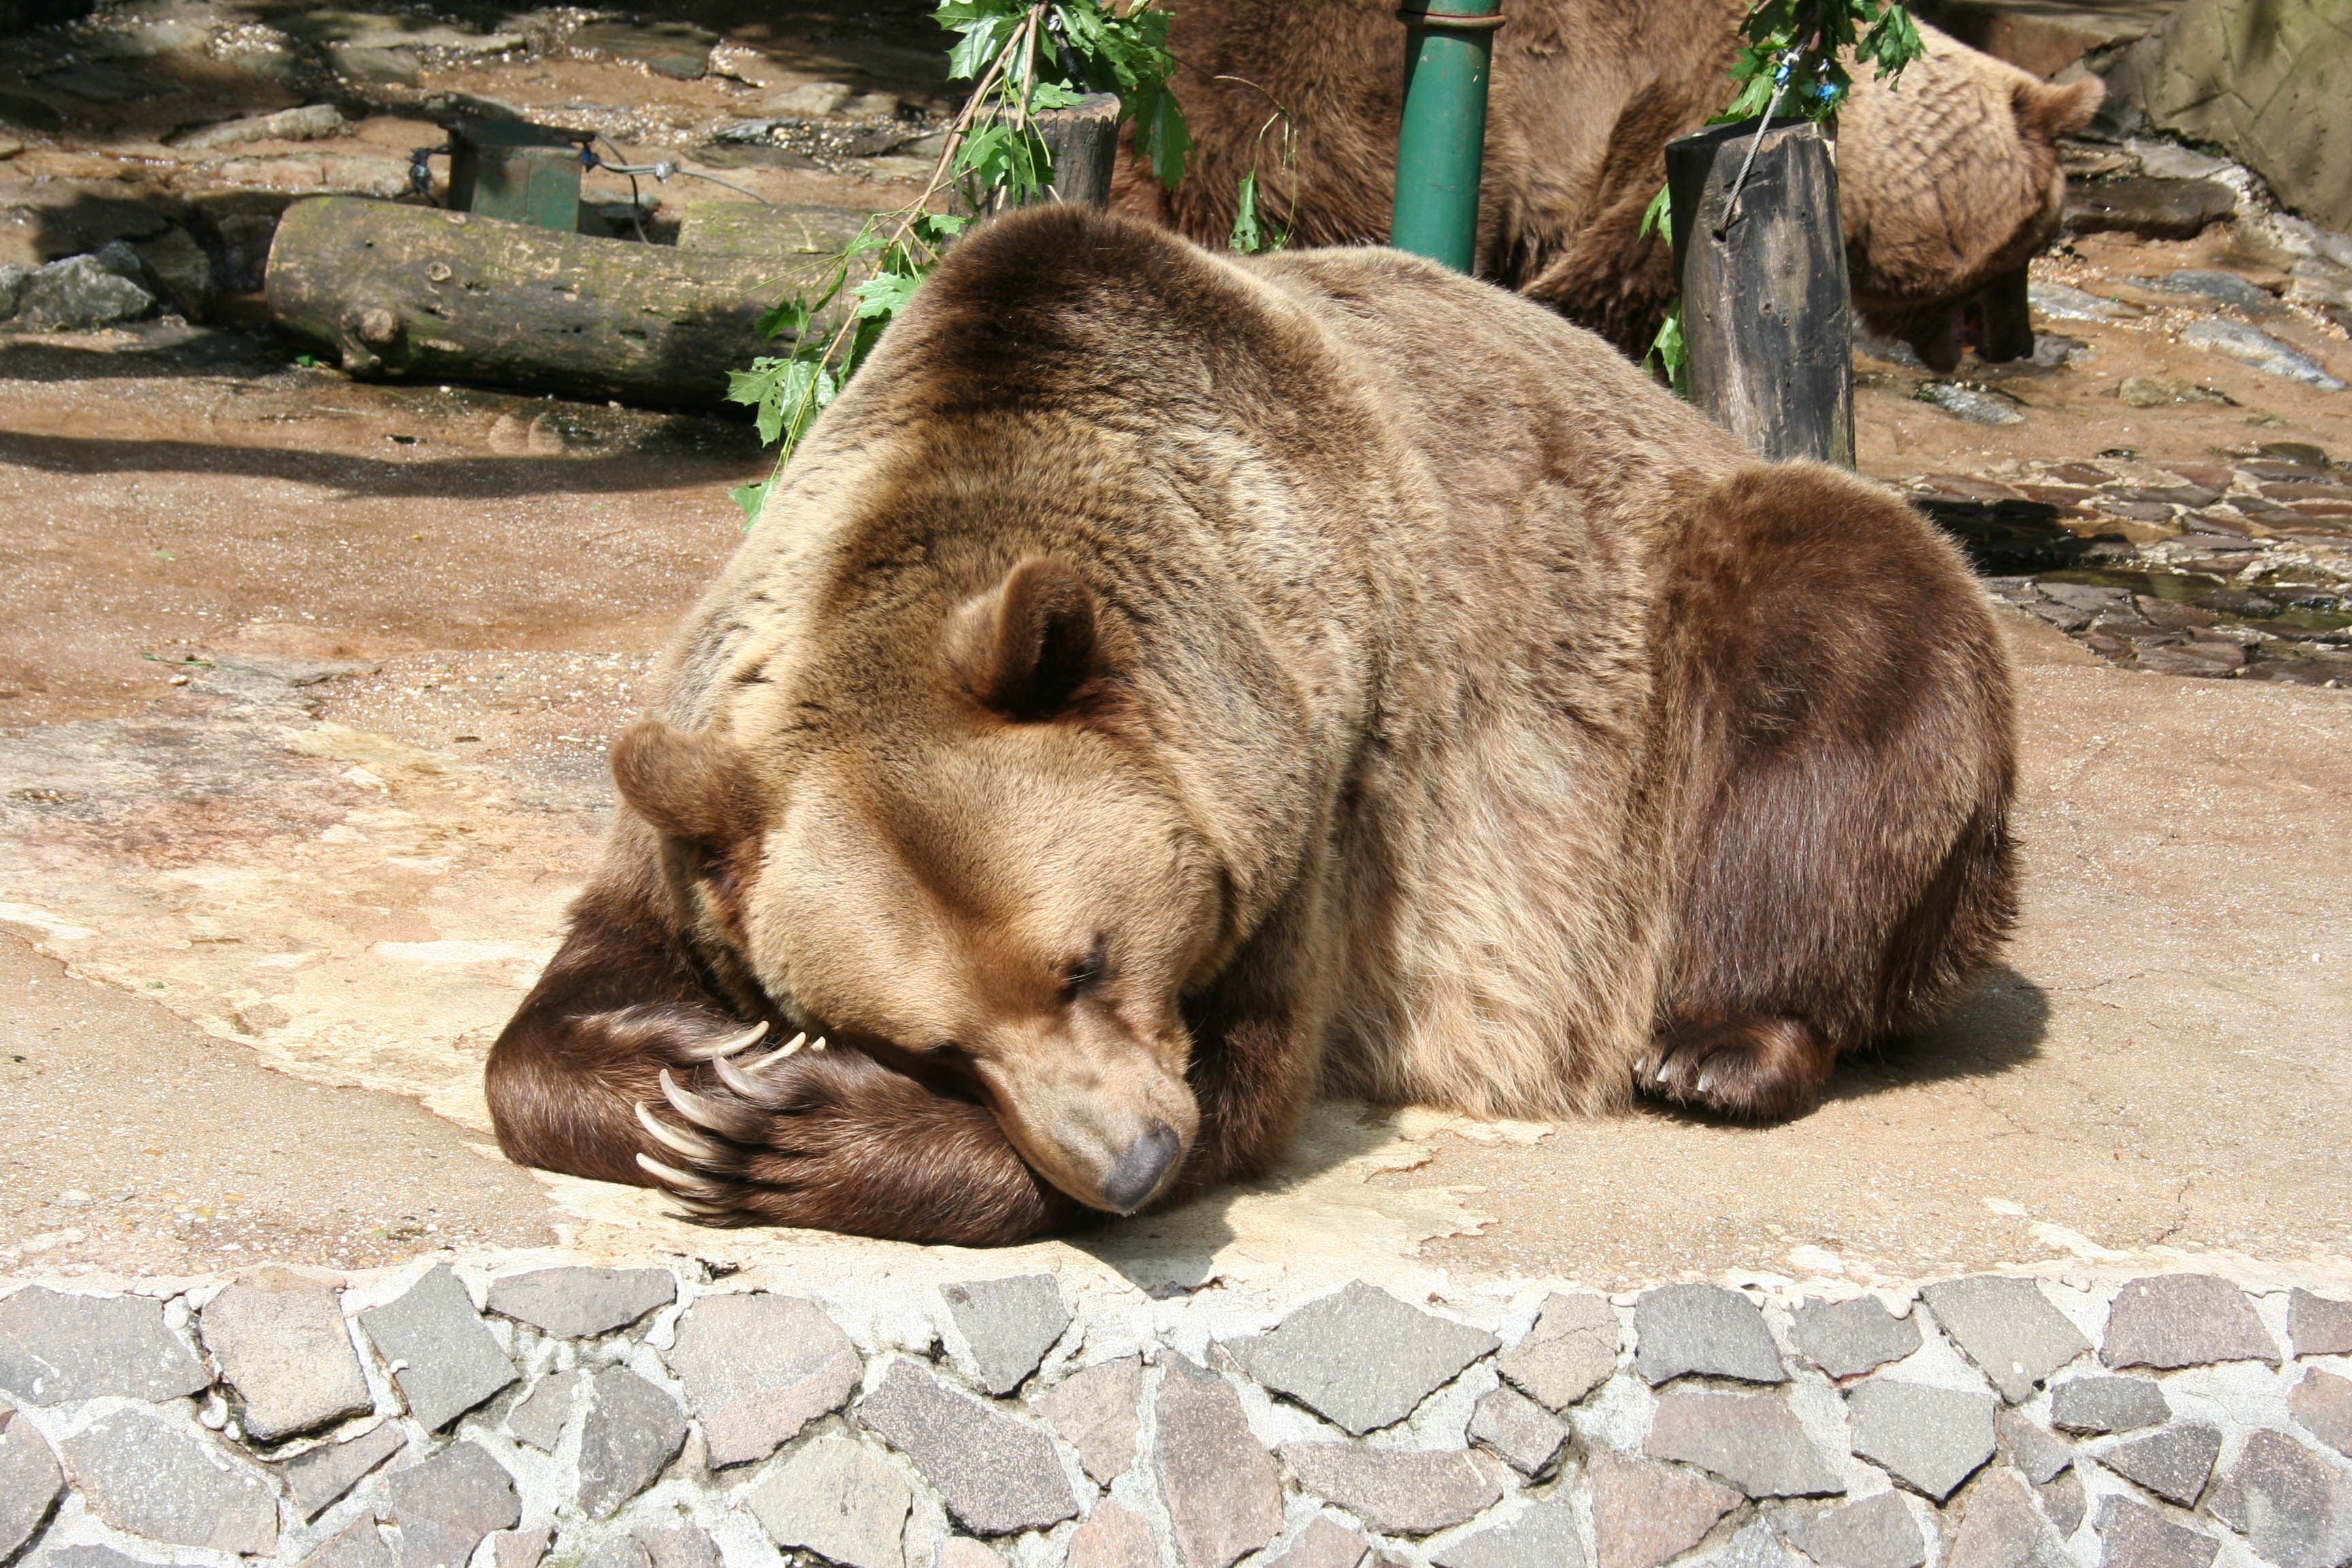 animals, lies, bear, brown bear, reserve